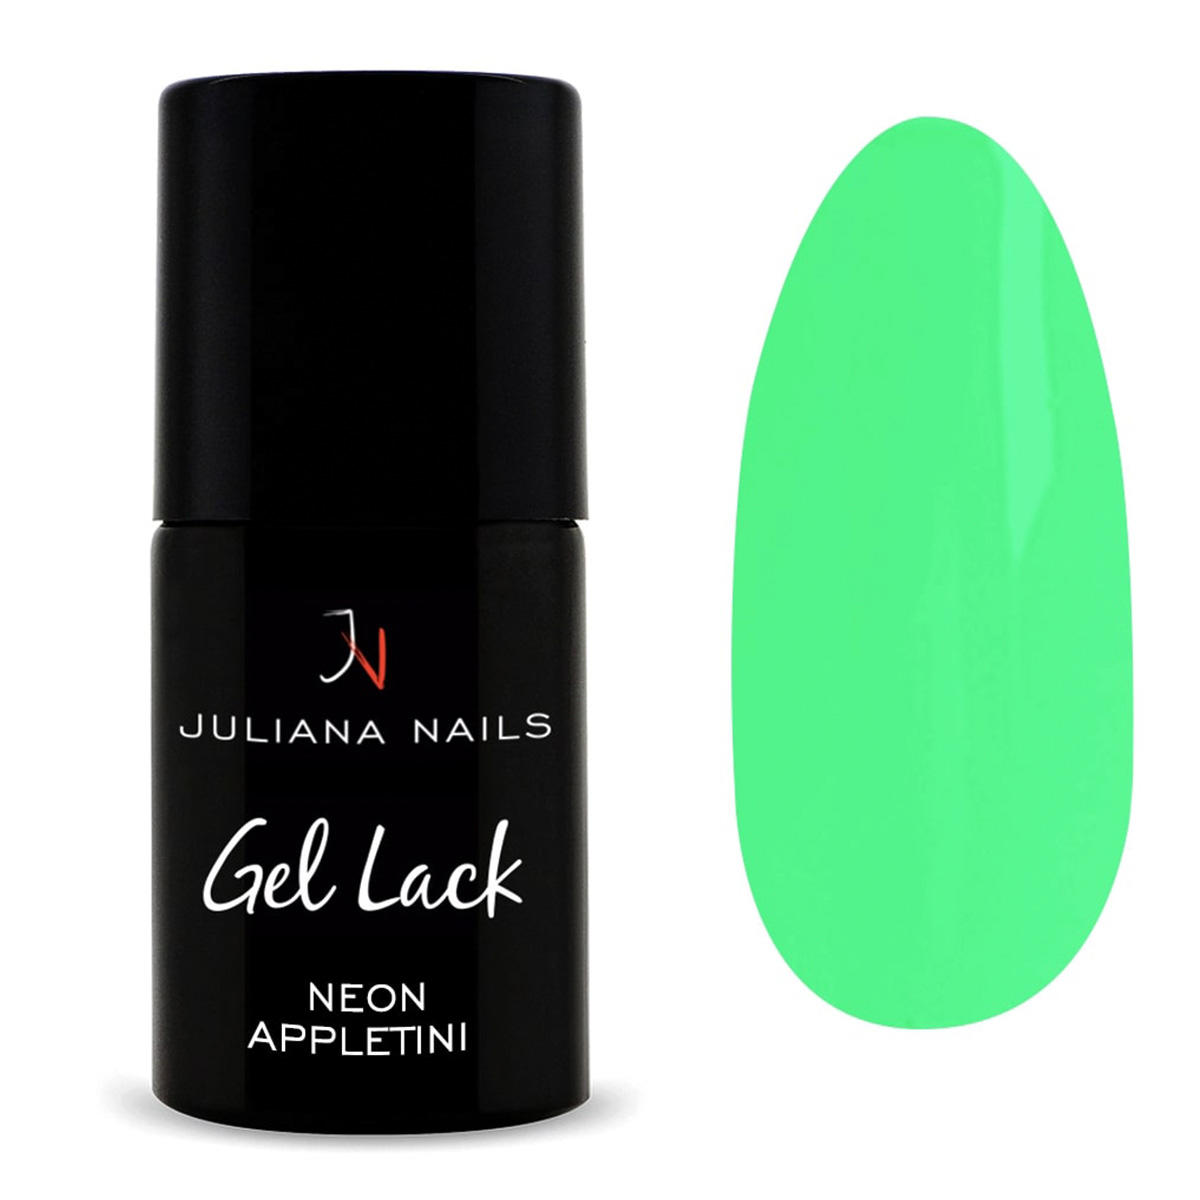 Juliana Nails Gel Lack Neon Appletini 6 ml